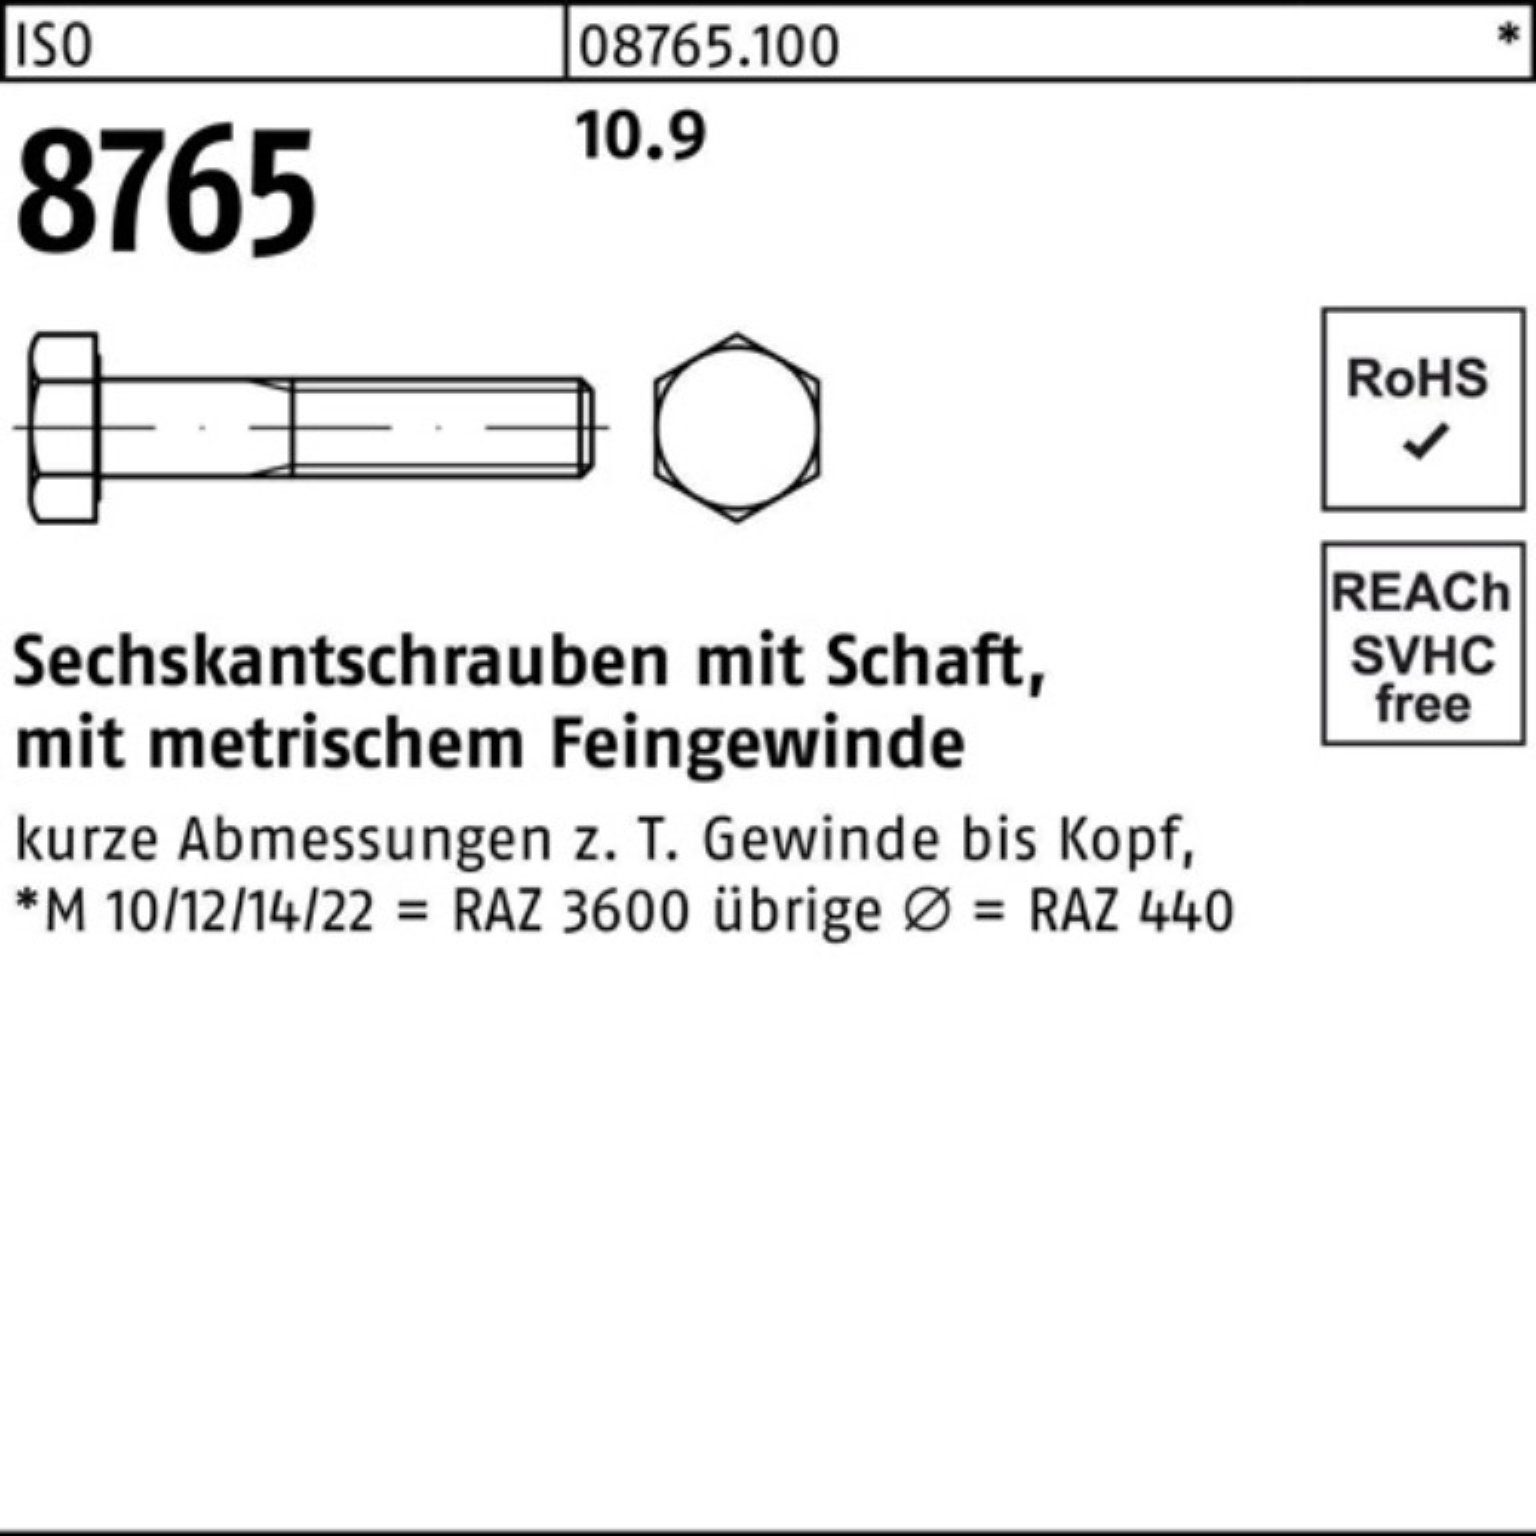 Sechskantschraube Reyher Pack 100 M12x1,25x 8765 100er ISO Sechskantschraube Schaft 50 St 10.9